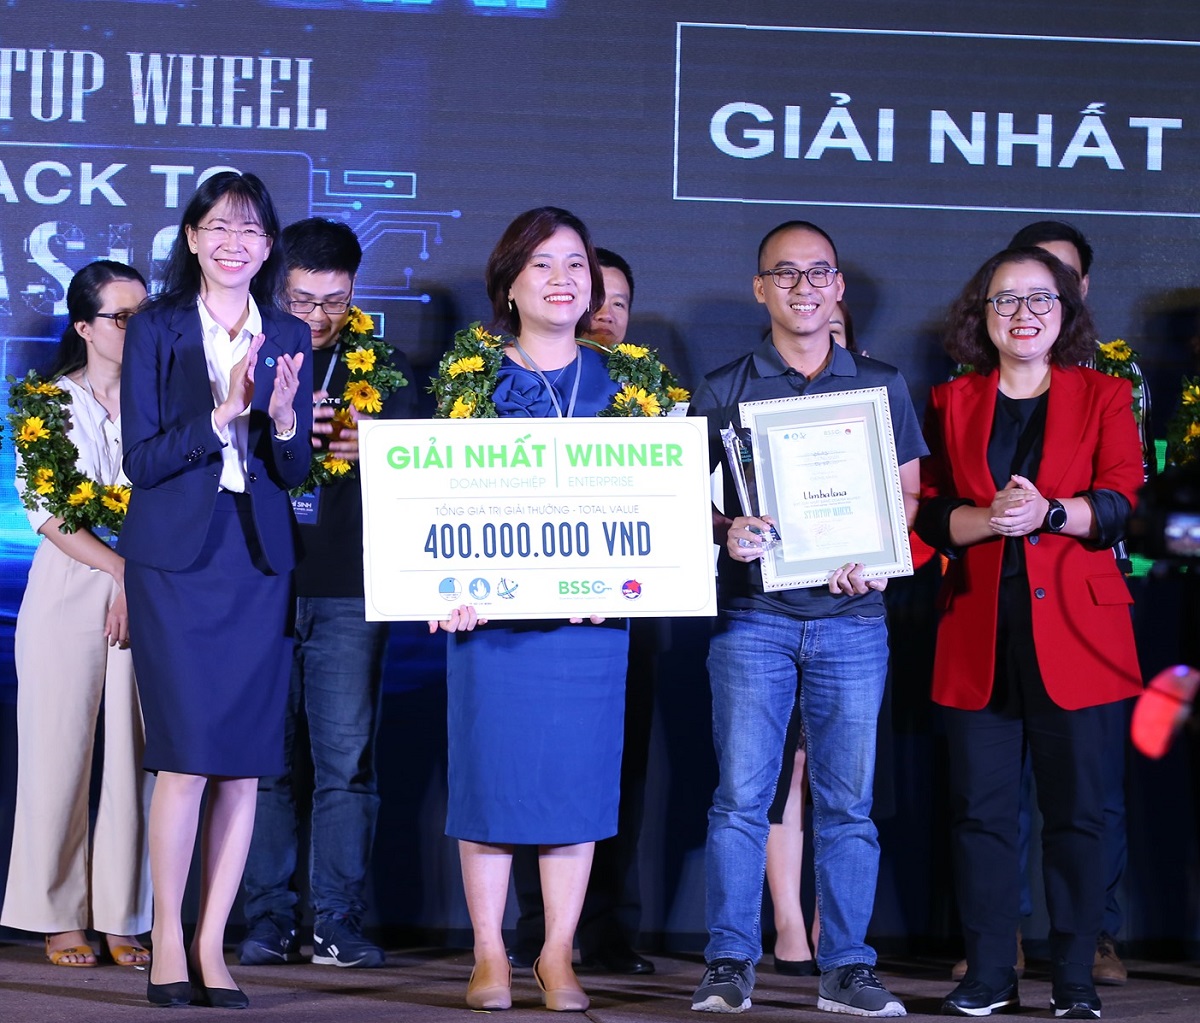 Đồng sáng lập Umbalena Lê Thị Cẩm Trinh và Nguyễn Việt Thắng nhận giải thưởng 400 triệu đồng từ ban tổ chức. Ảnh: Startup Wheel.